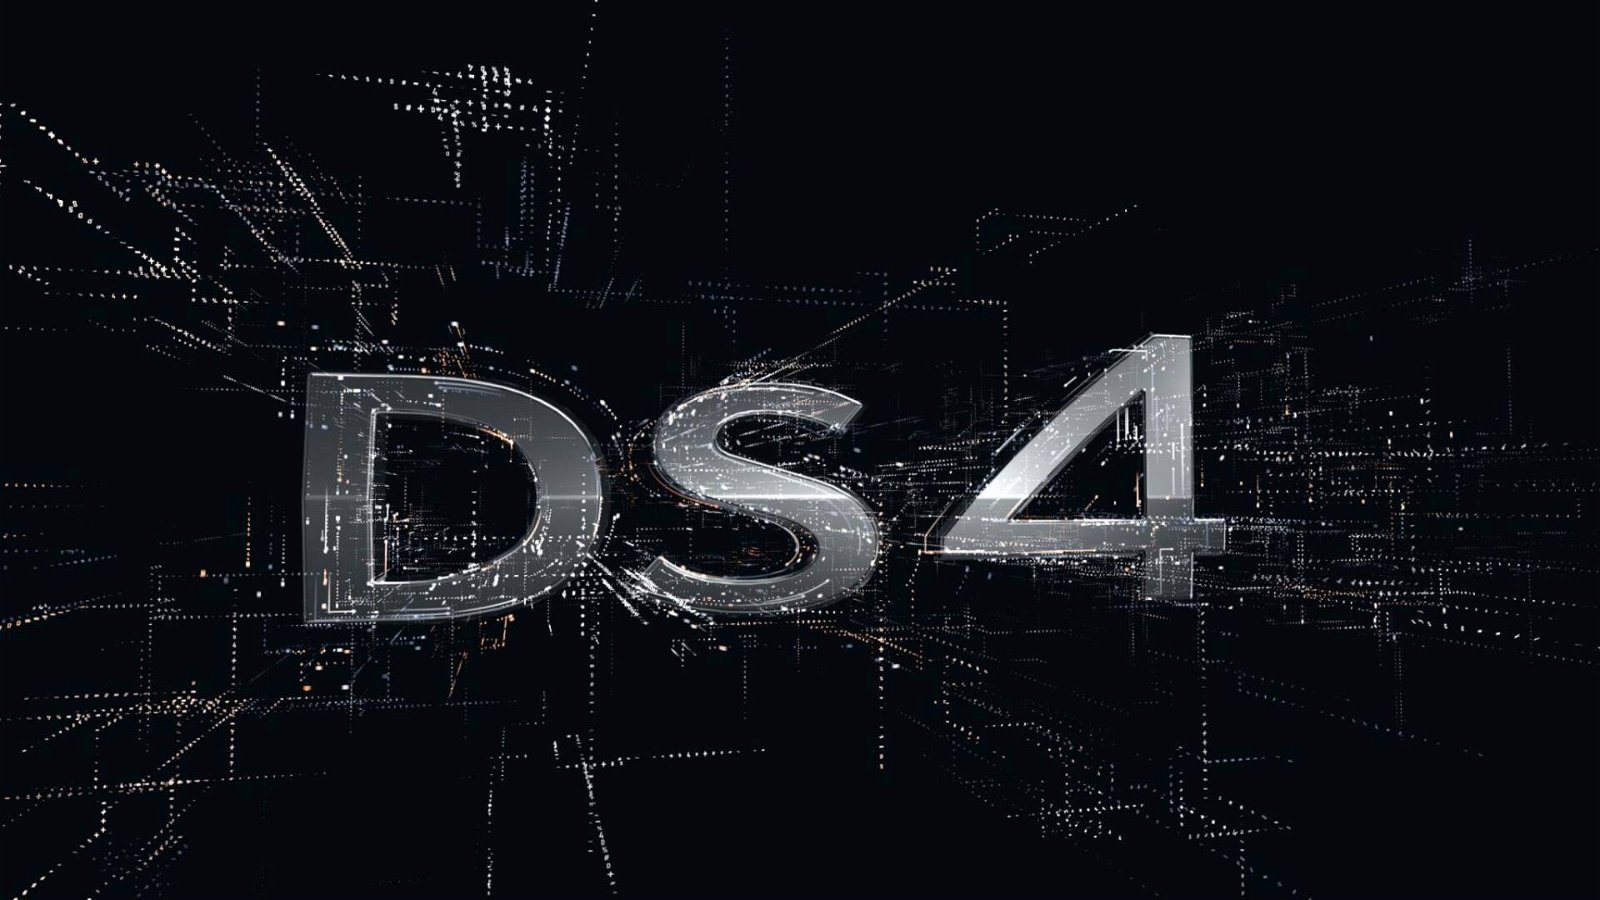 Immagine di DS4: debutto nel 2021 come berlina con motorizzazione ibrida plug-in da 225 Cv